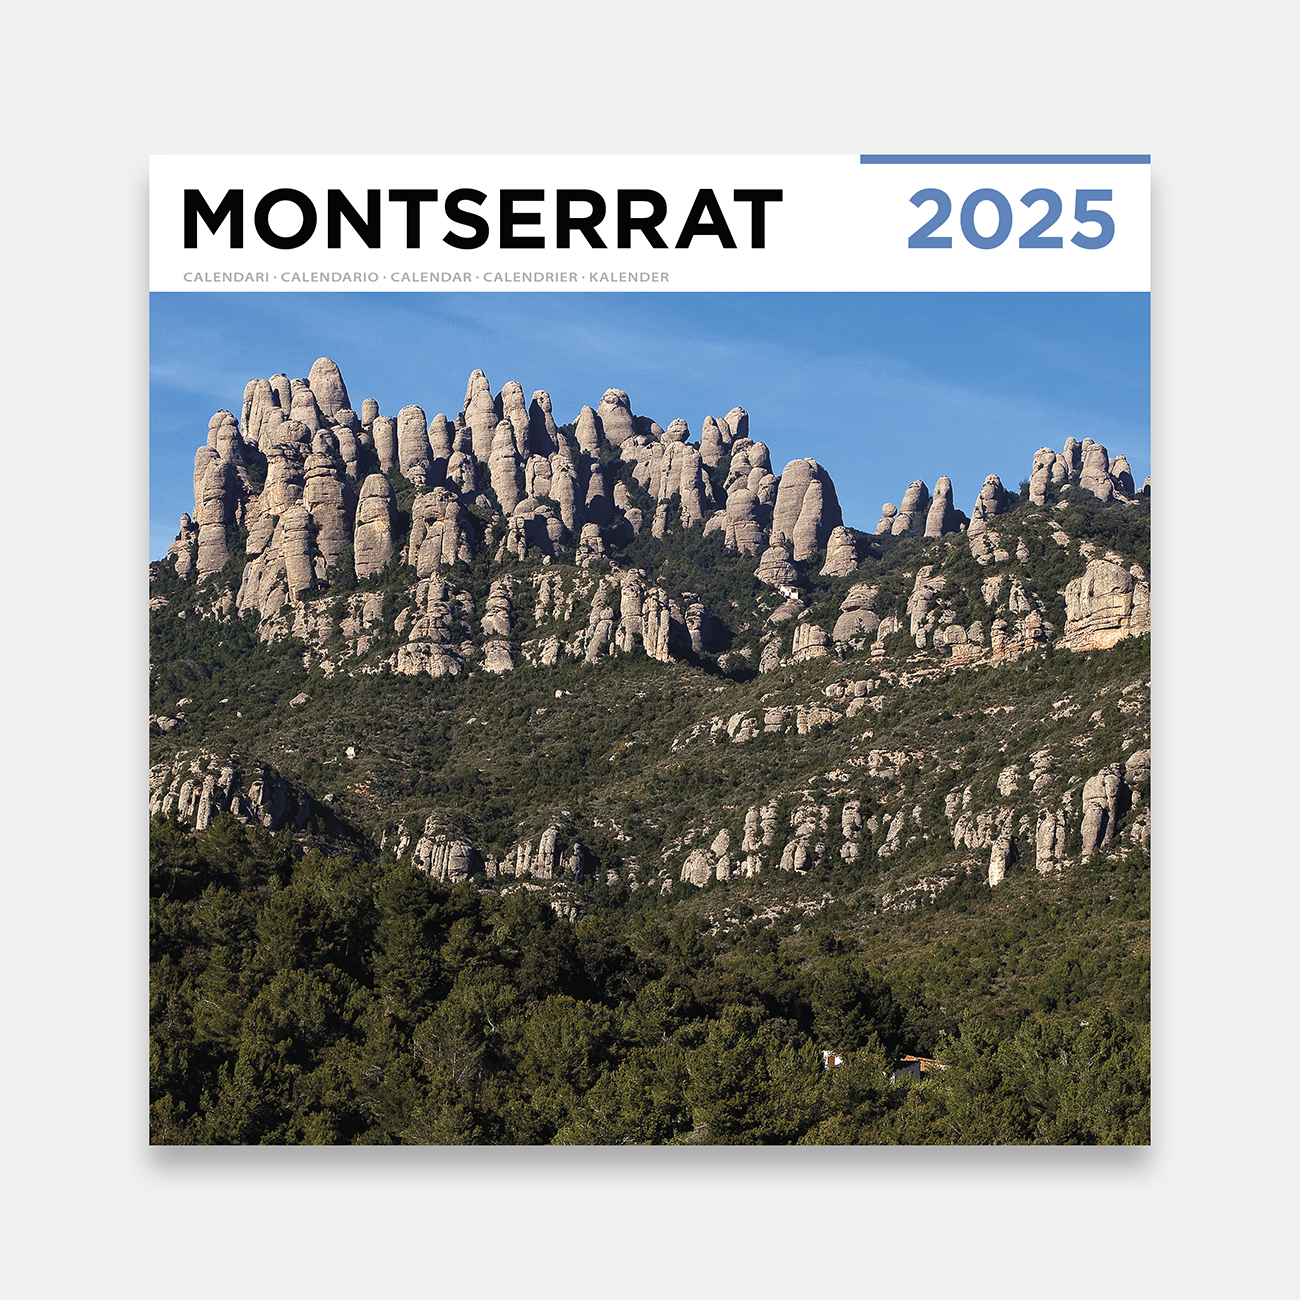 Calendario 2025 Montserrat 25m calendario pared 2025 montserrat